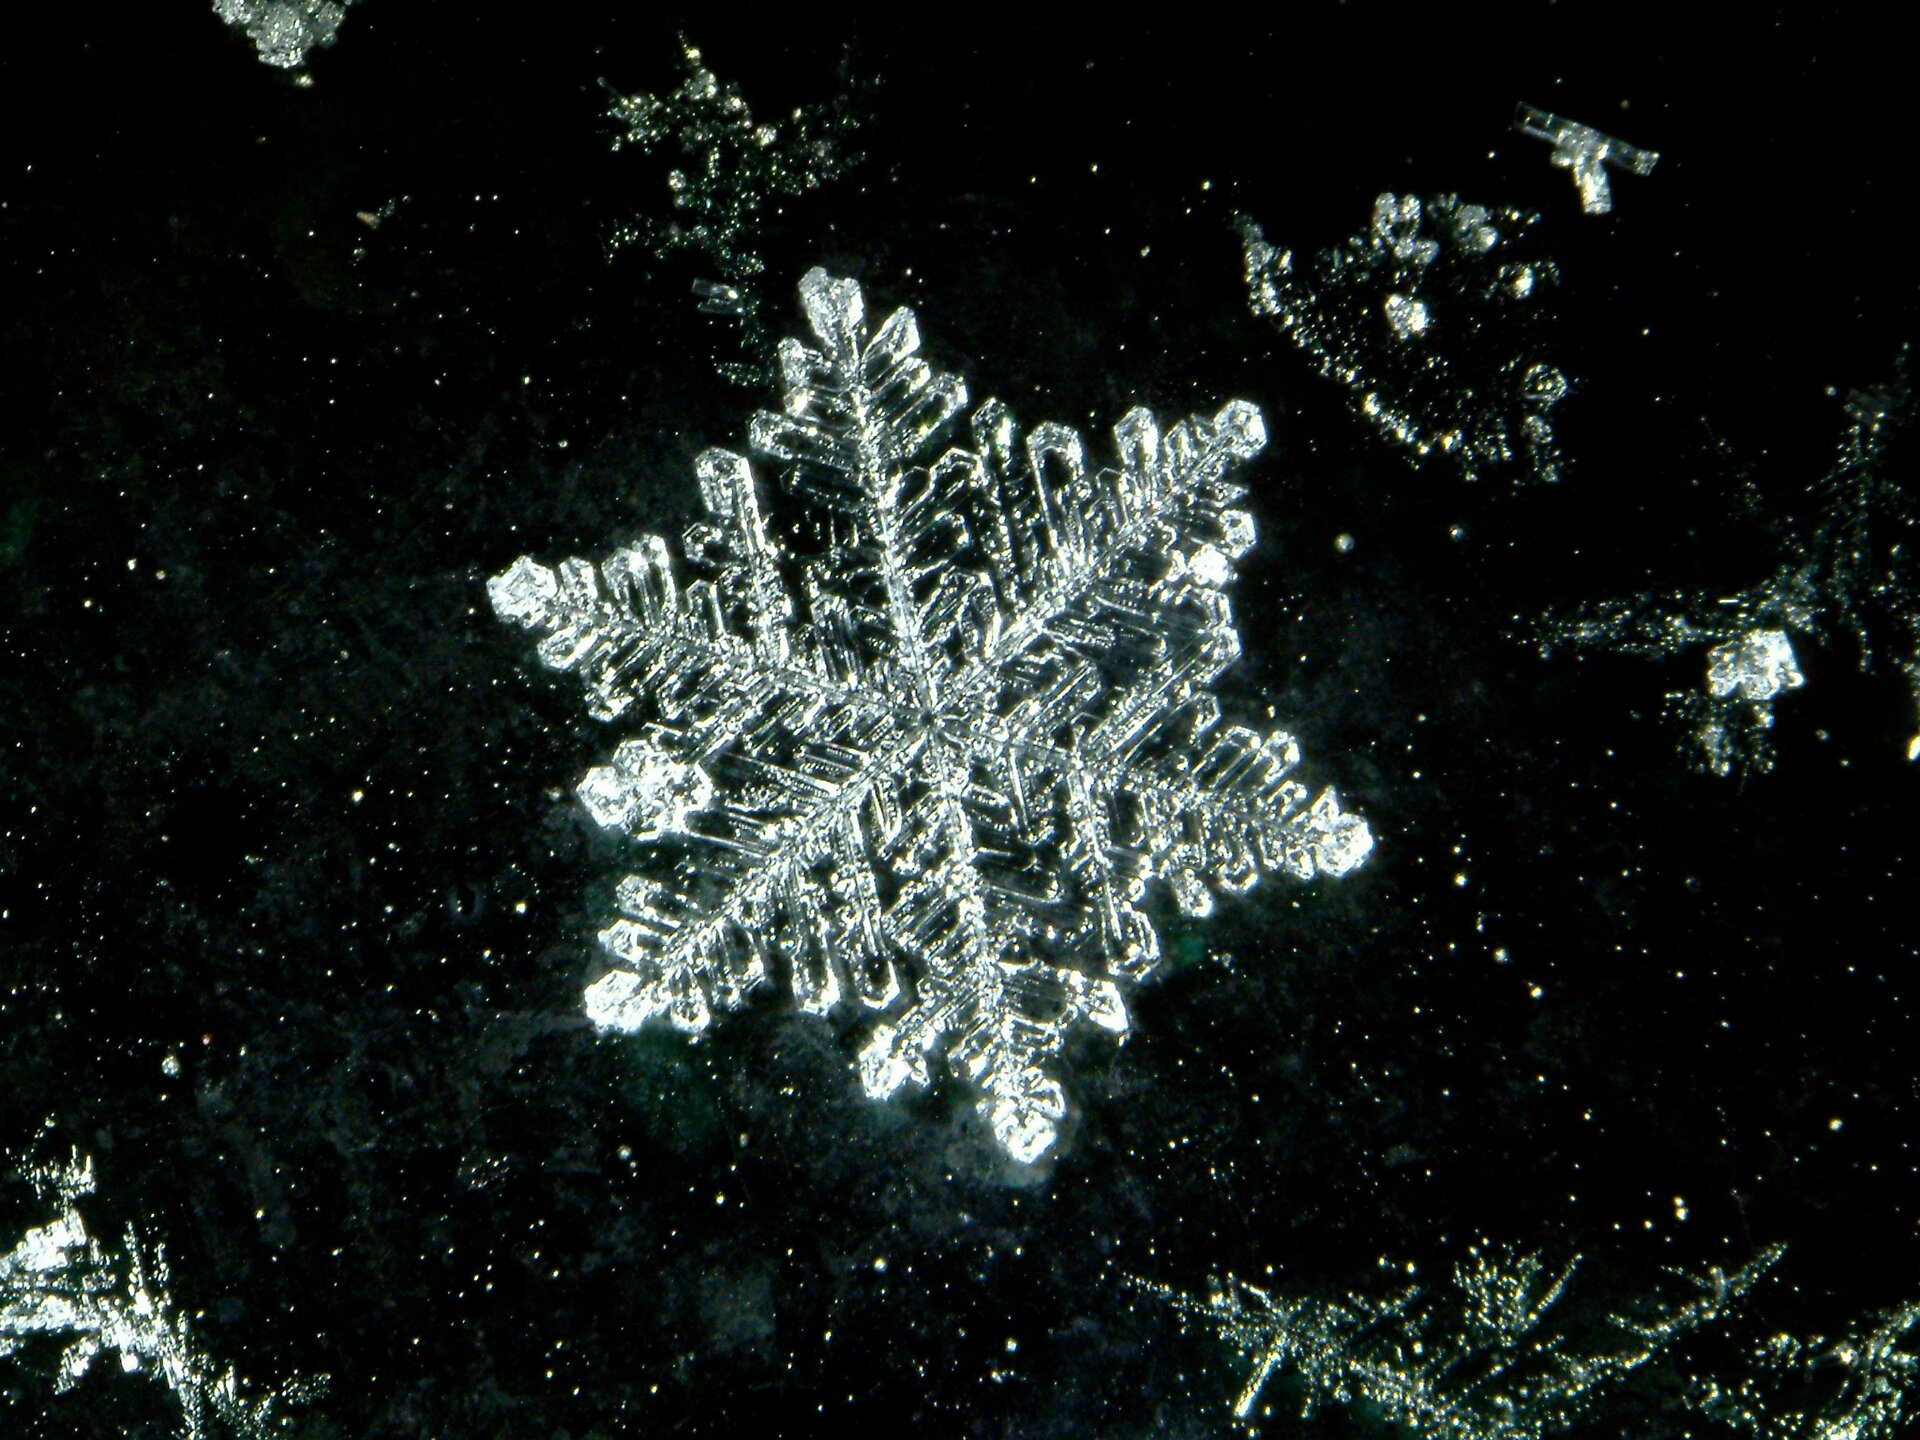 Zdjęcie przedstawiające budowę całego płatka śniegu. Ma kształt sześcioramiennej gwiazdki. Ramiona gwiazdki są symetryczne. Końce ramion śnieżynki są zaokrąglone.